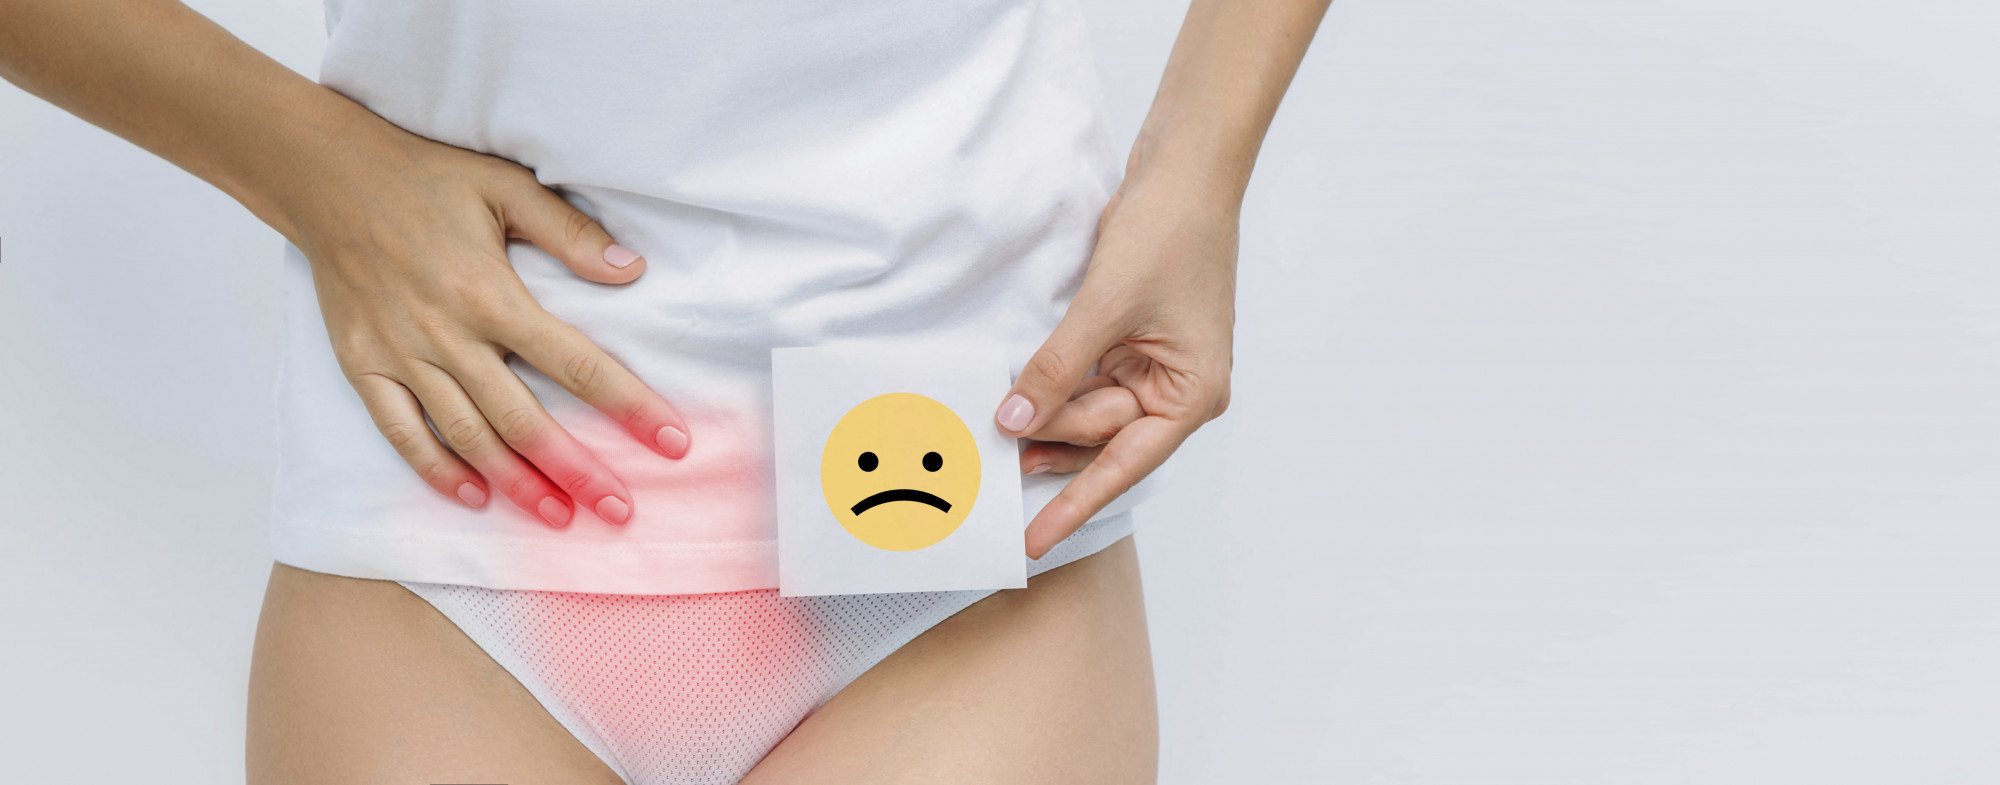 Ha a nők menstruációs szabadságra mehetnek, a férfiak kapjanak urológiai szabadnapot, mondja az Élhető Erzsébetváros Egyesület képviselőnője